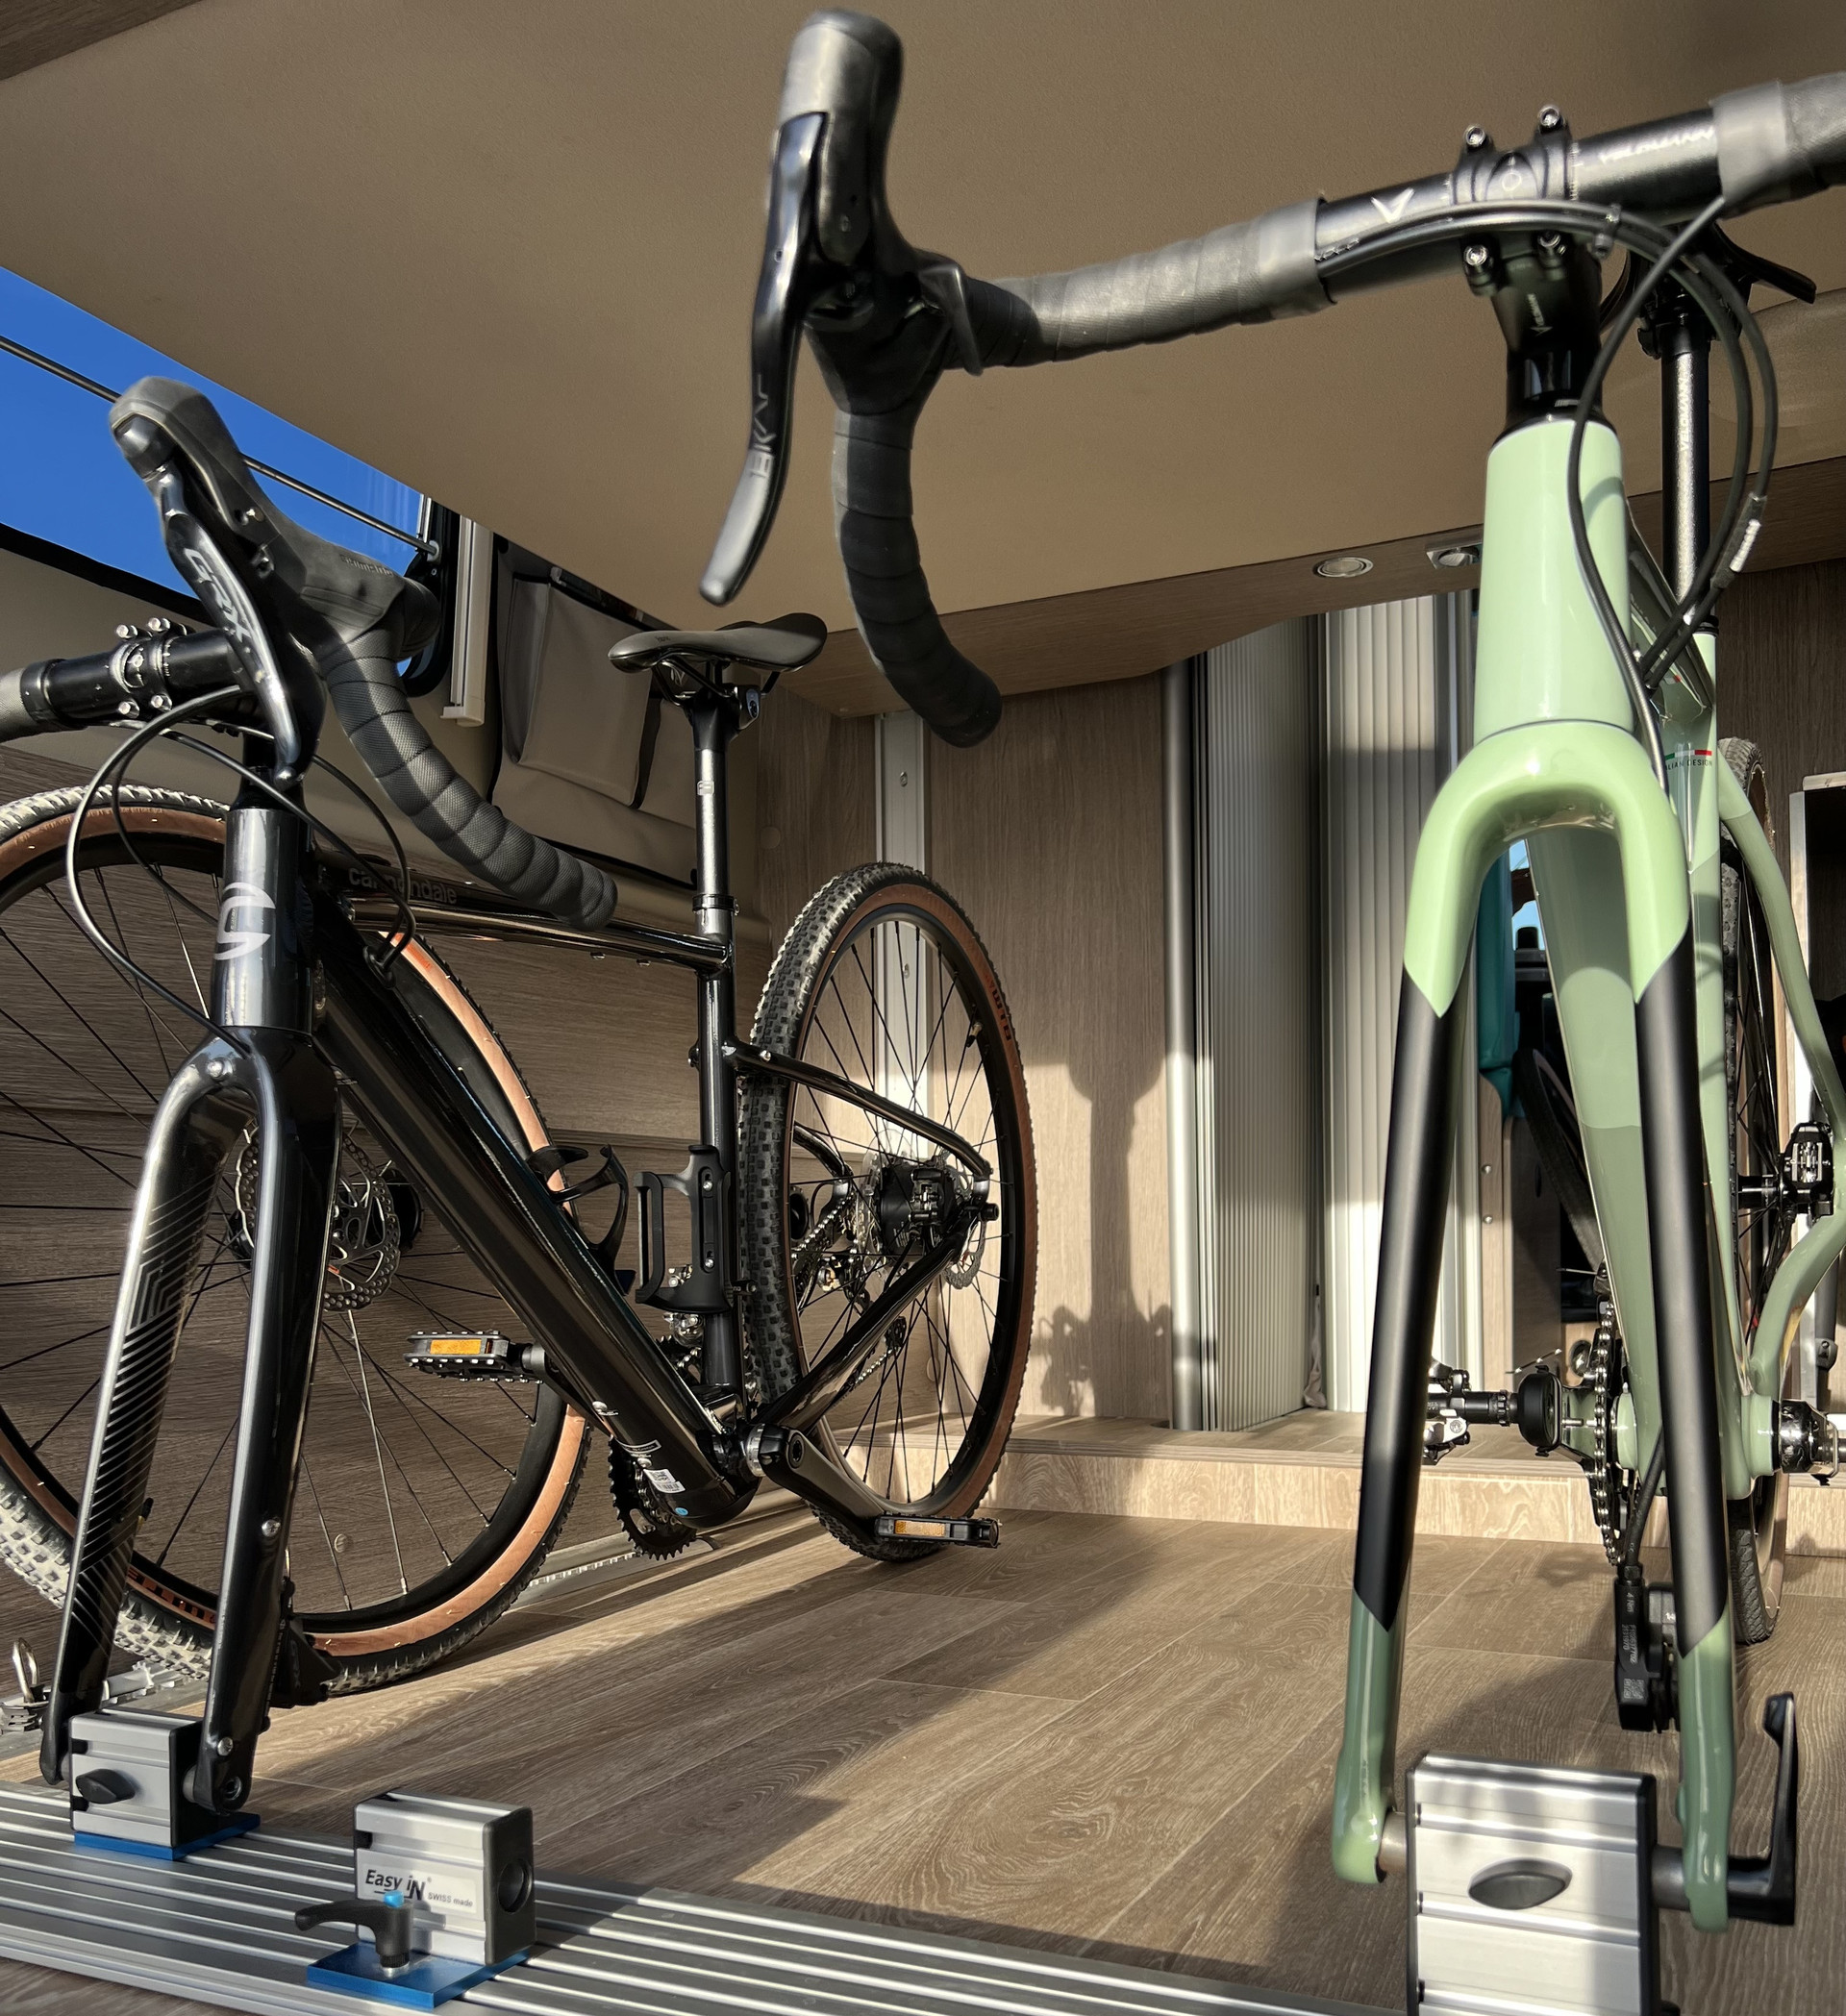 Transport de bicicletes segur dins de la càmper amb el suport easy In bike